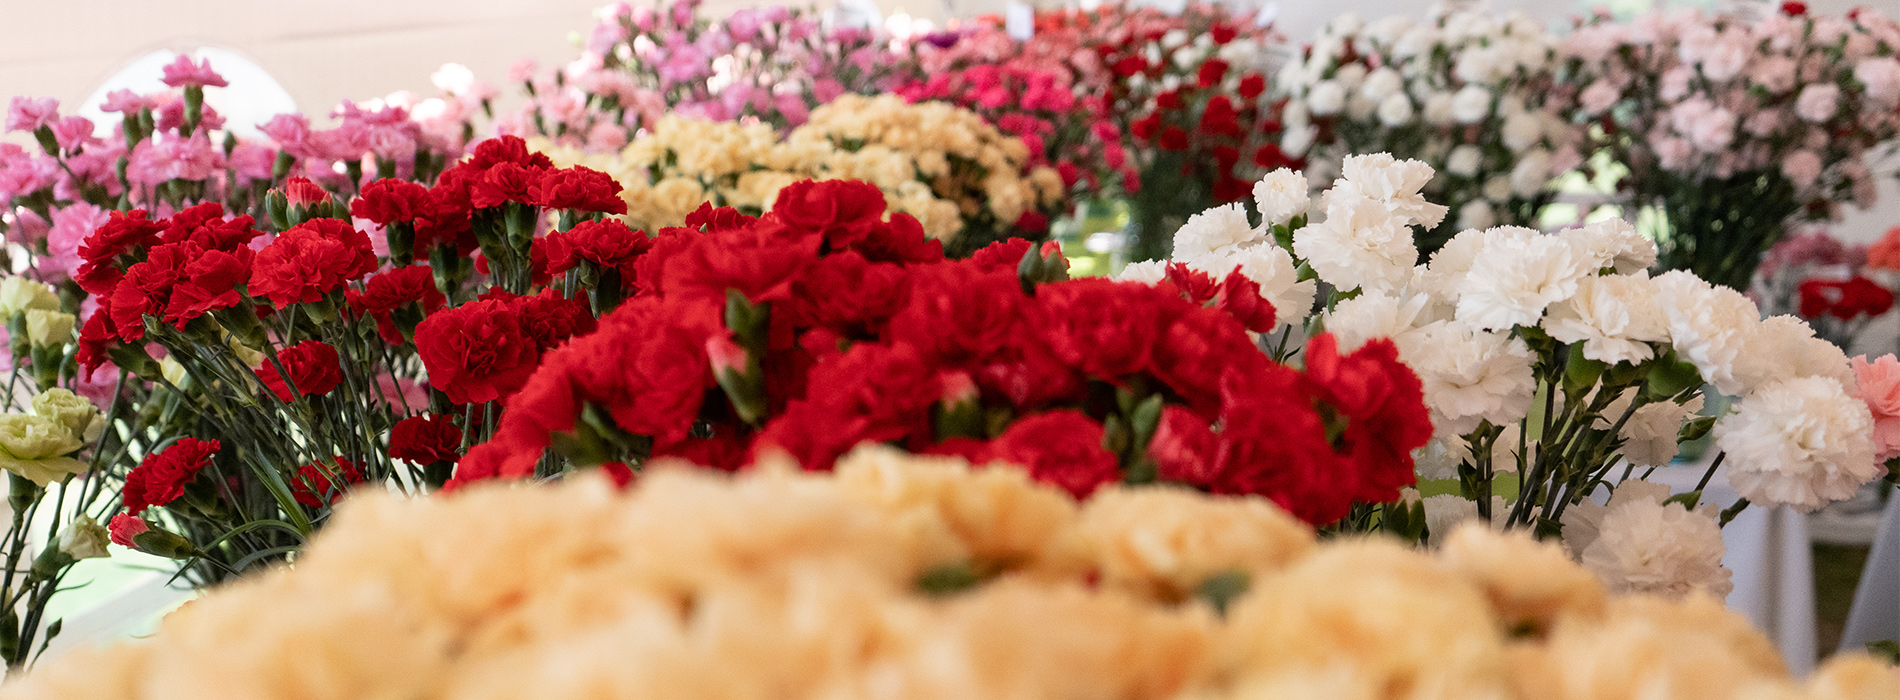 Exportaciones de flores colombianas llegan a la cifra más alta en su historia 